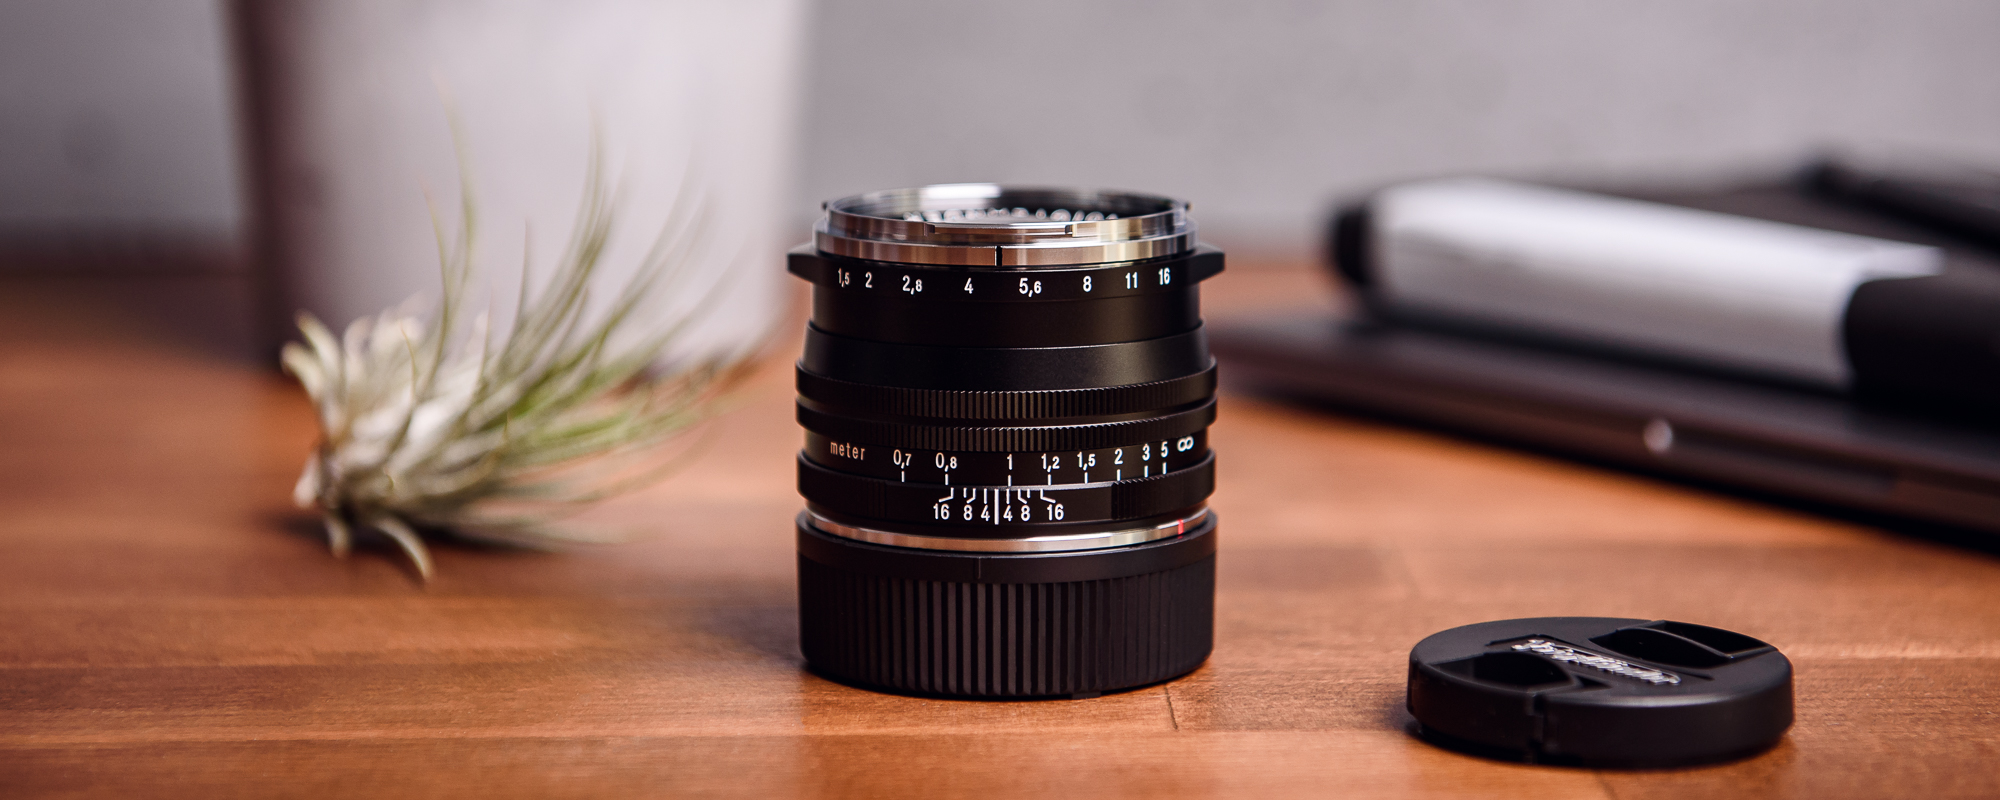 Obiektyw Voigtlander Nokton II 50 mm f/1,5 do Leica M - MC, czarny - na biurku